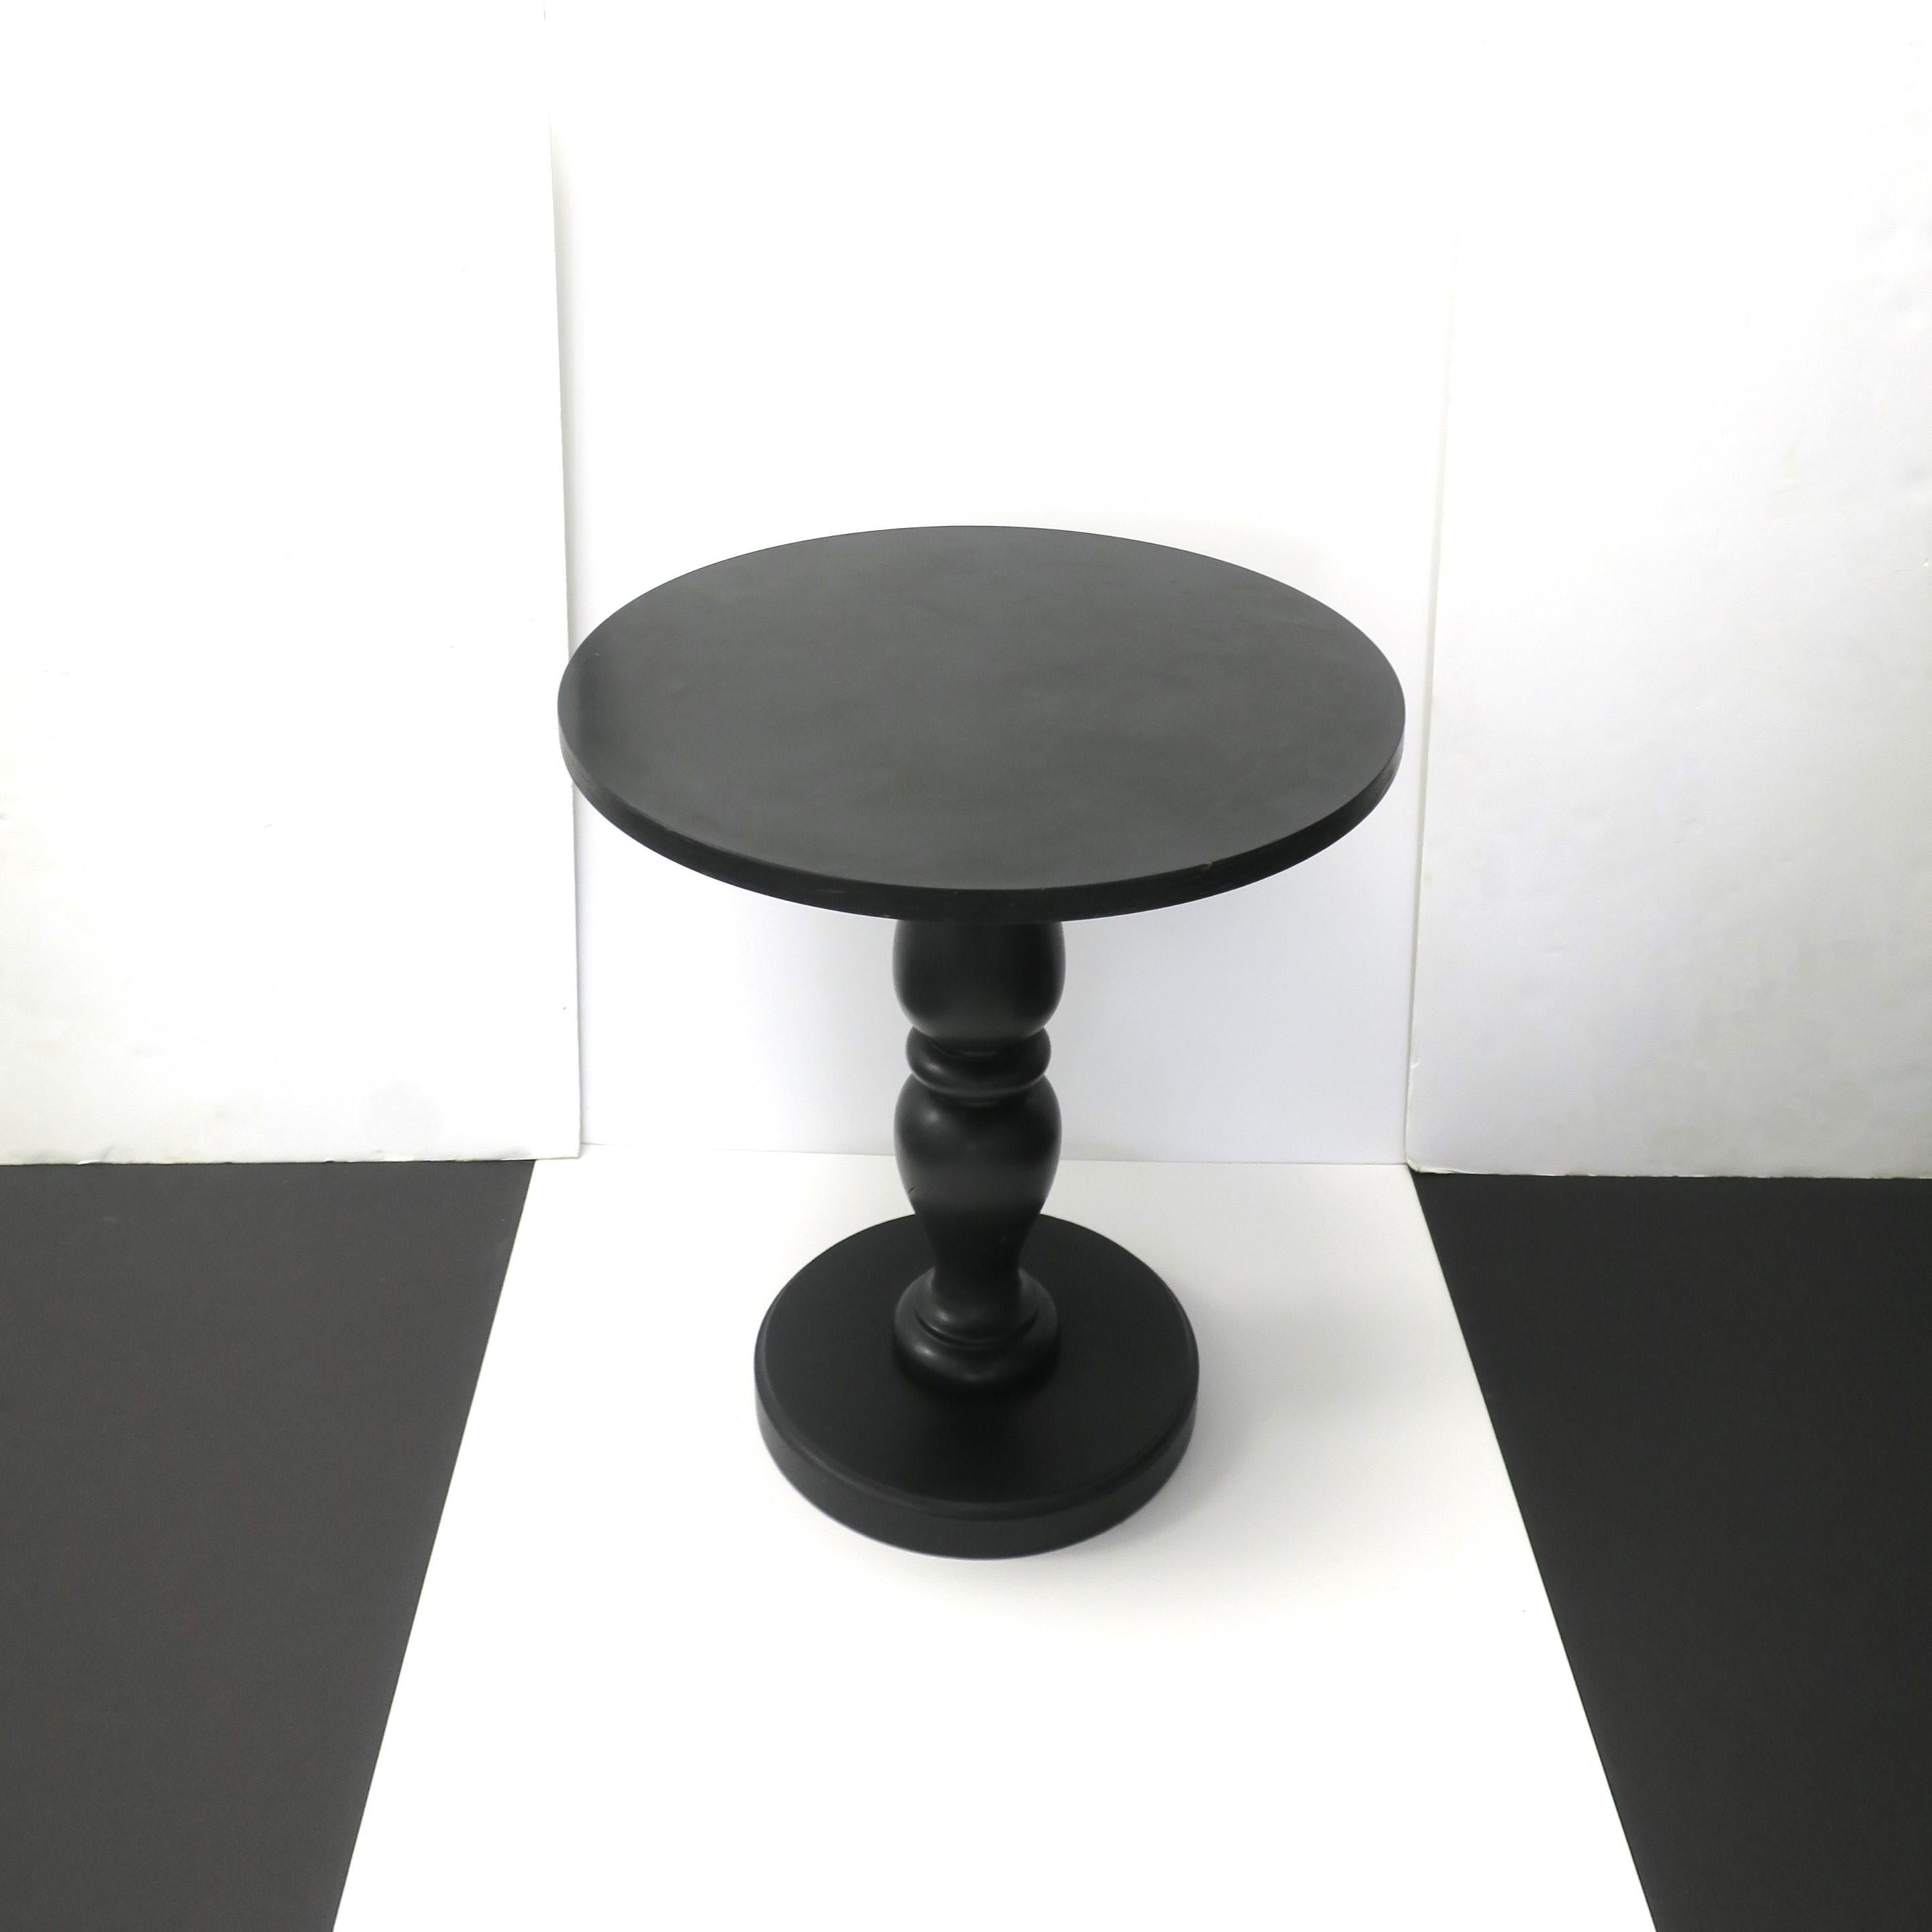 Ein runder schwarzer Beistell- oder Akzenttisch mit gedrechseltem Sockel, circa Ende des 20. Jahrhunderts, 1970er Jahre. Der Tisch hat eine hochglänzende schwarze Laminatplatte über einer Holzplatte und einen flachen oder matten gedrechselten